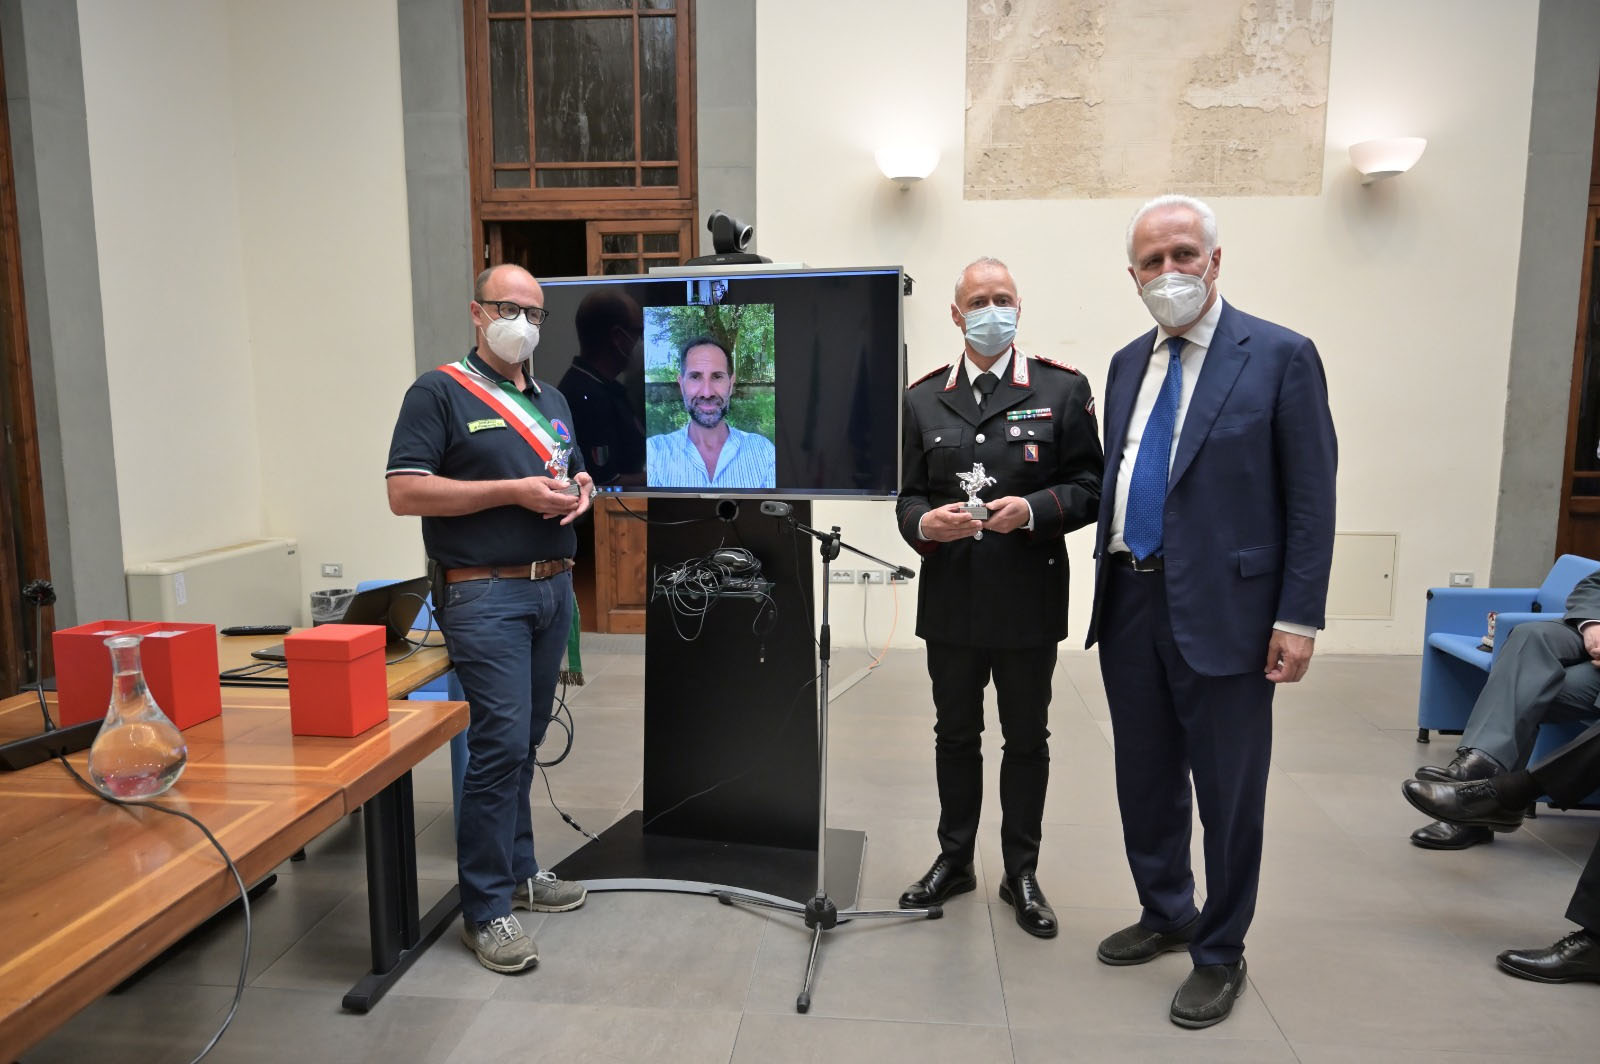 Bimbo ritrovato, Giani consegna Pegaso a sindaco, carabiniere e giornalista